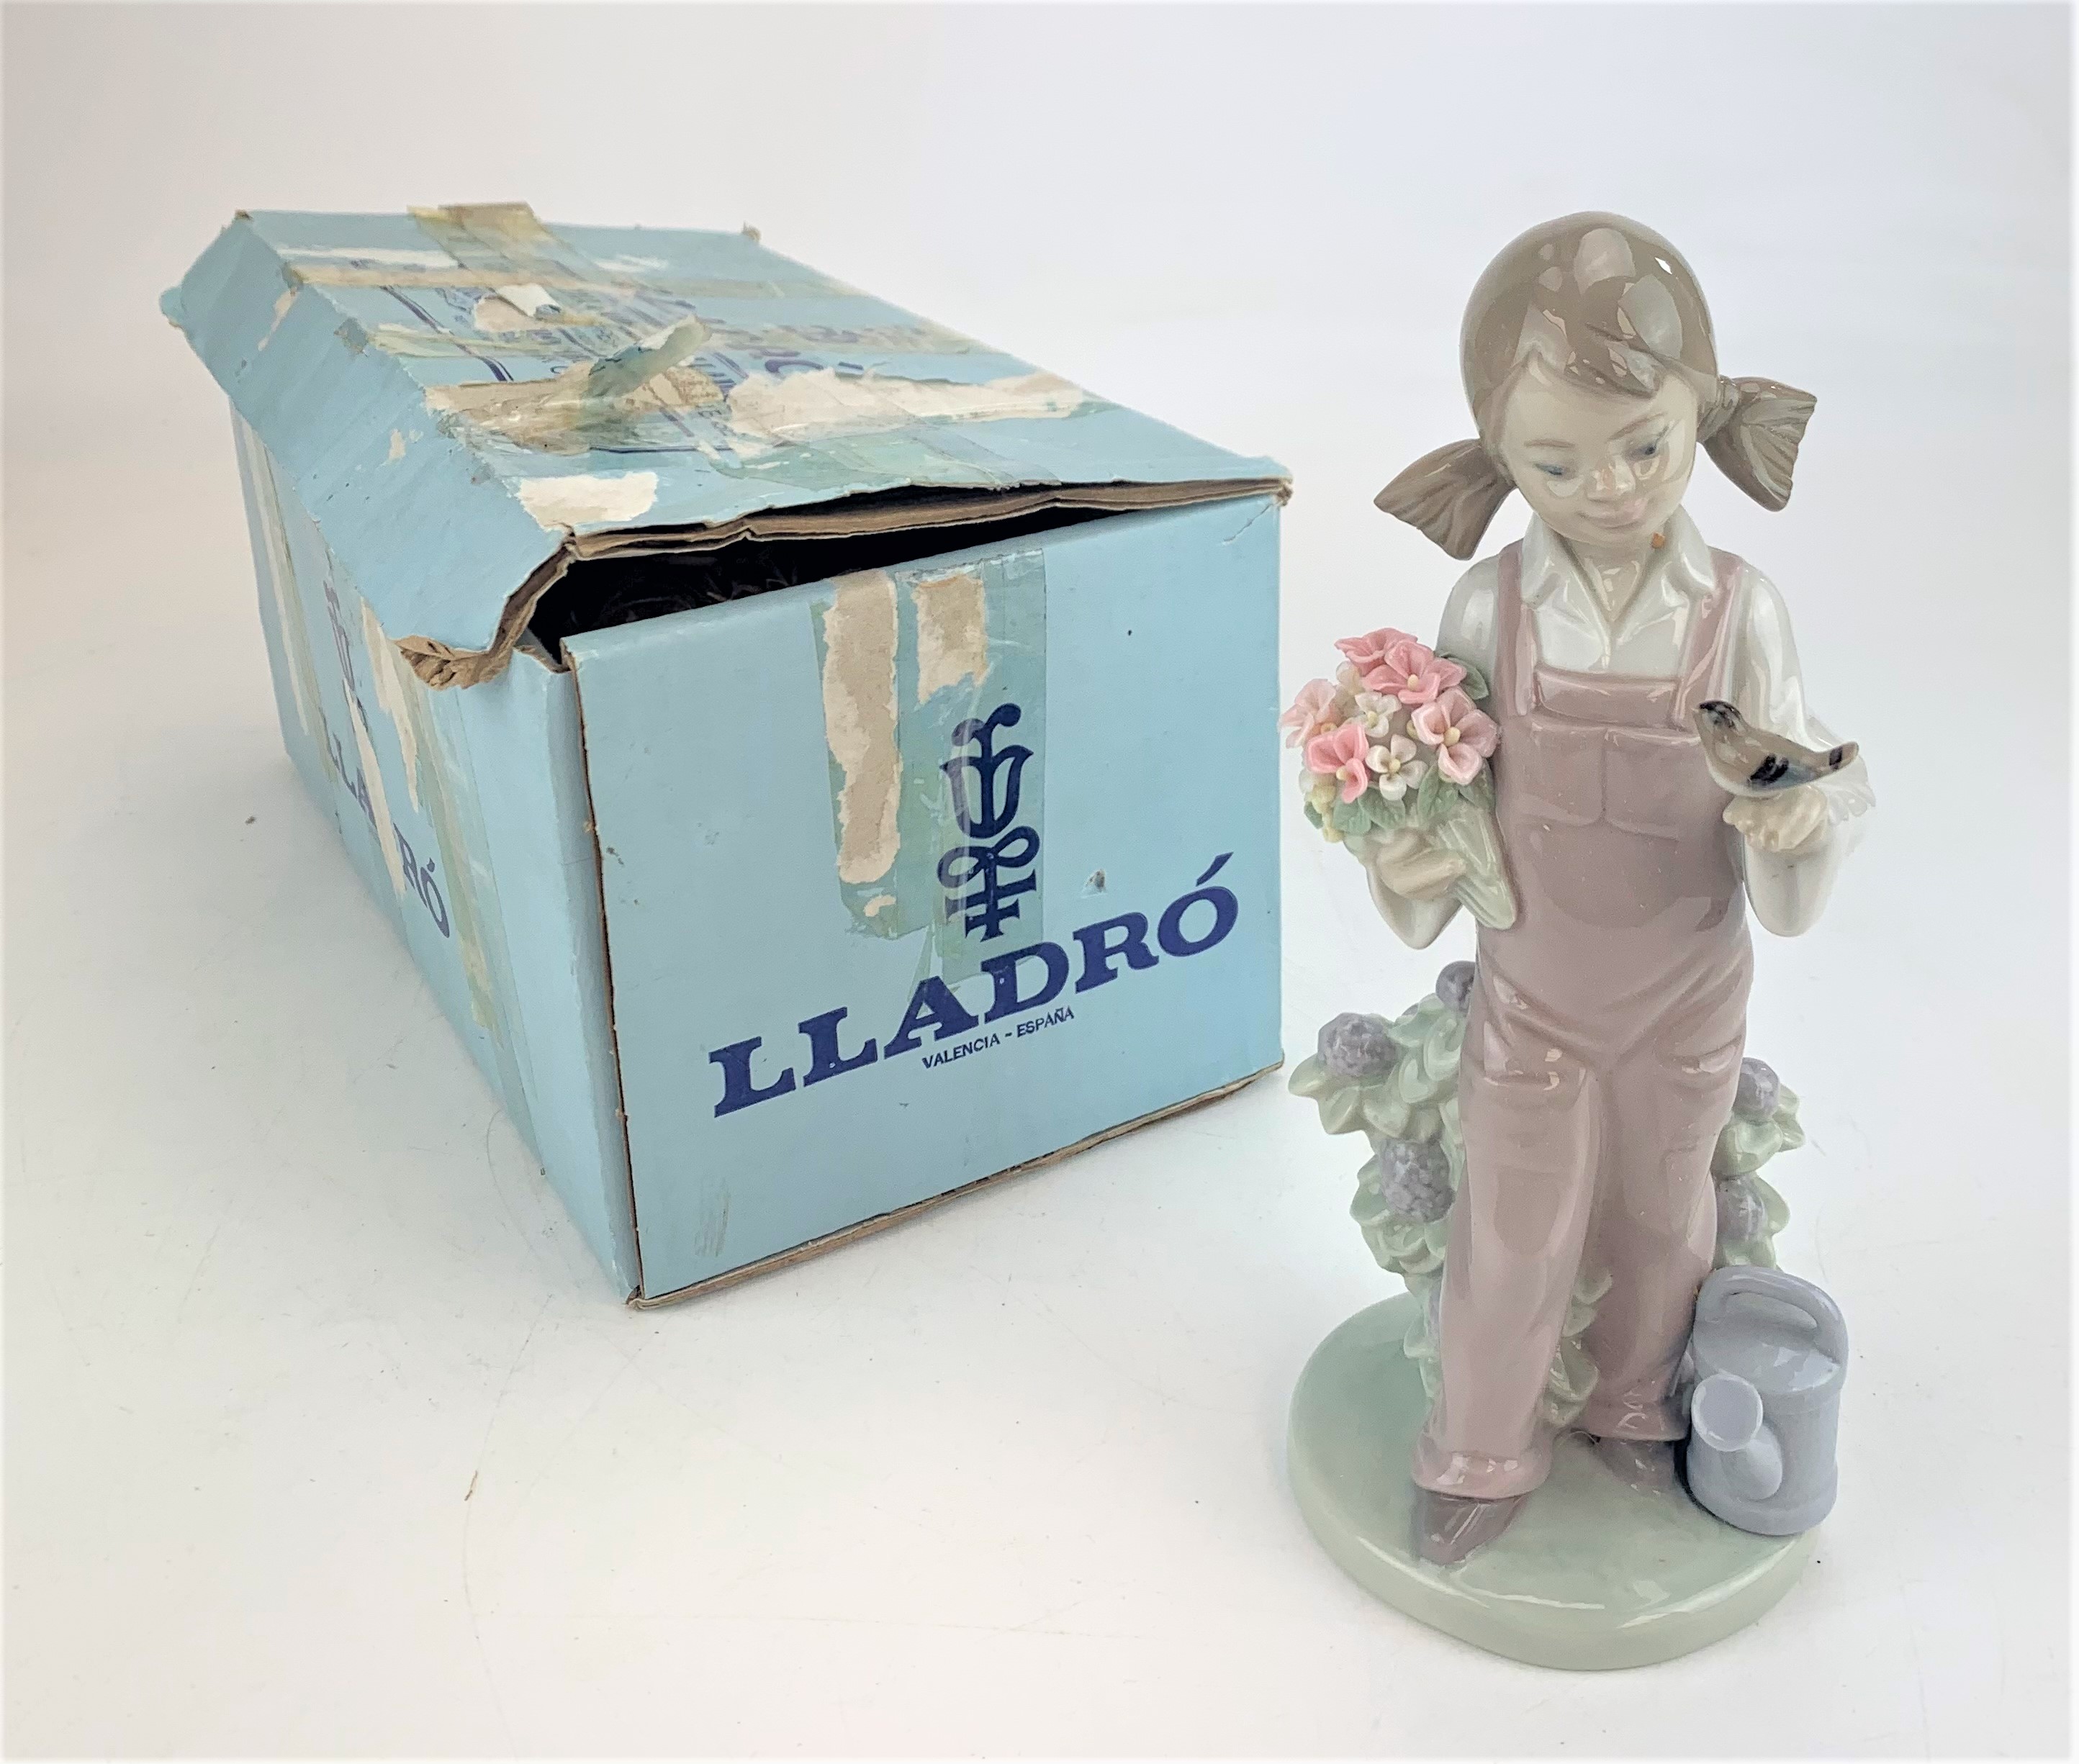 Lladro girl figure in box